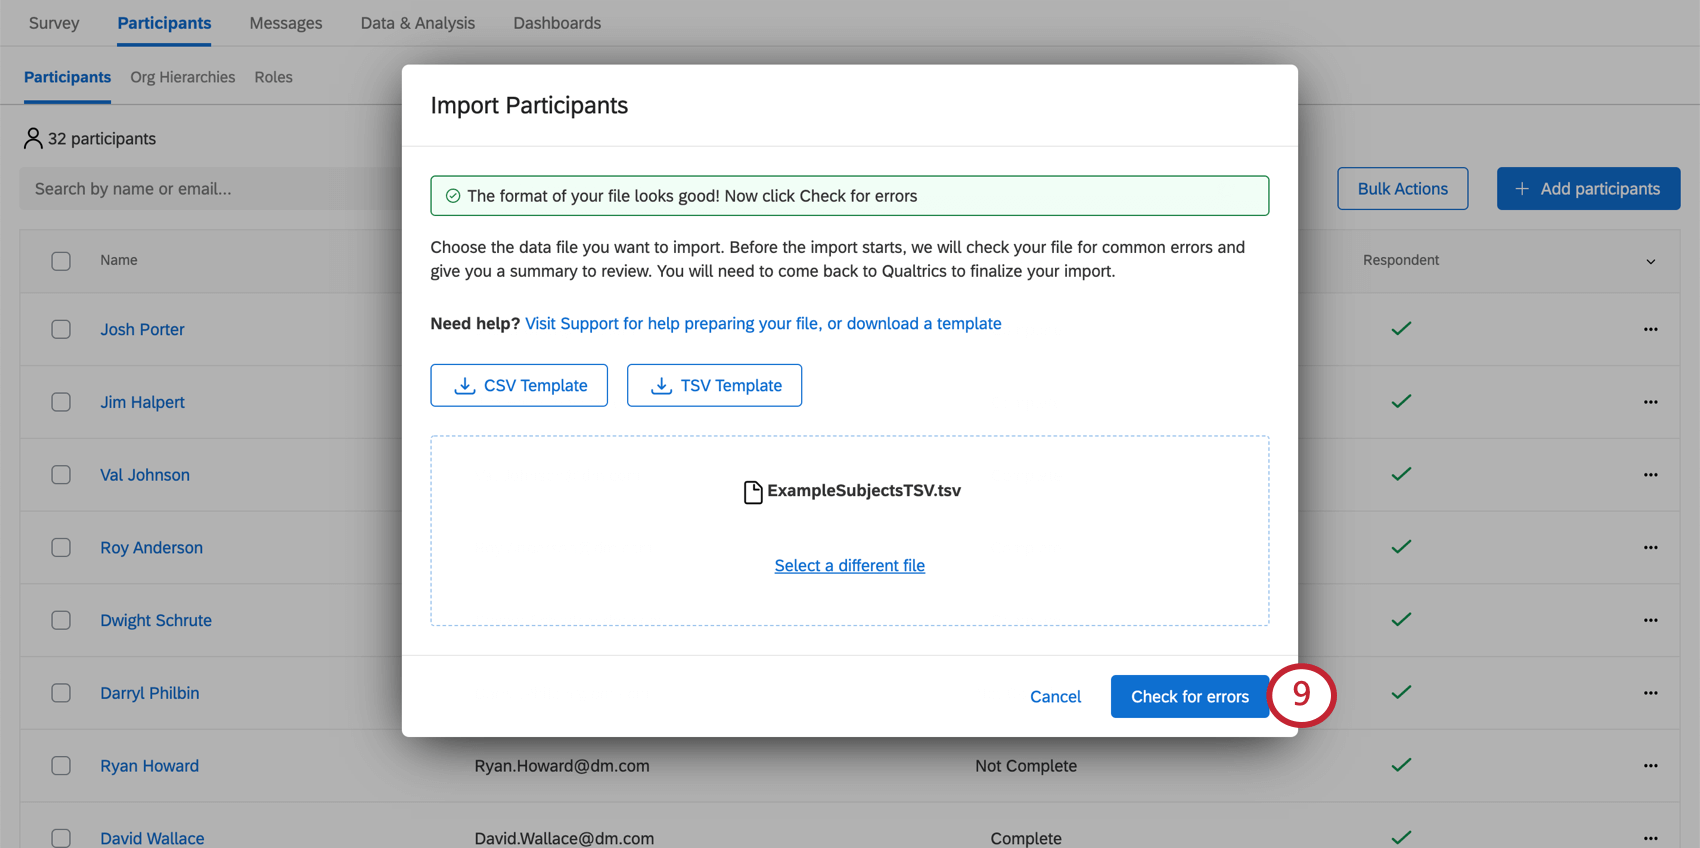 ファイルにエラーがない旨のメッセージが緑で表示され、［エラーのチェック］ボタンが青色に変わり、クリックできるようになる